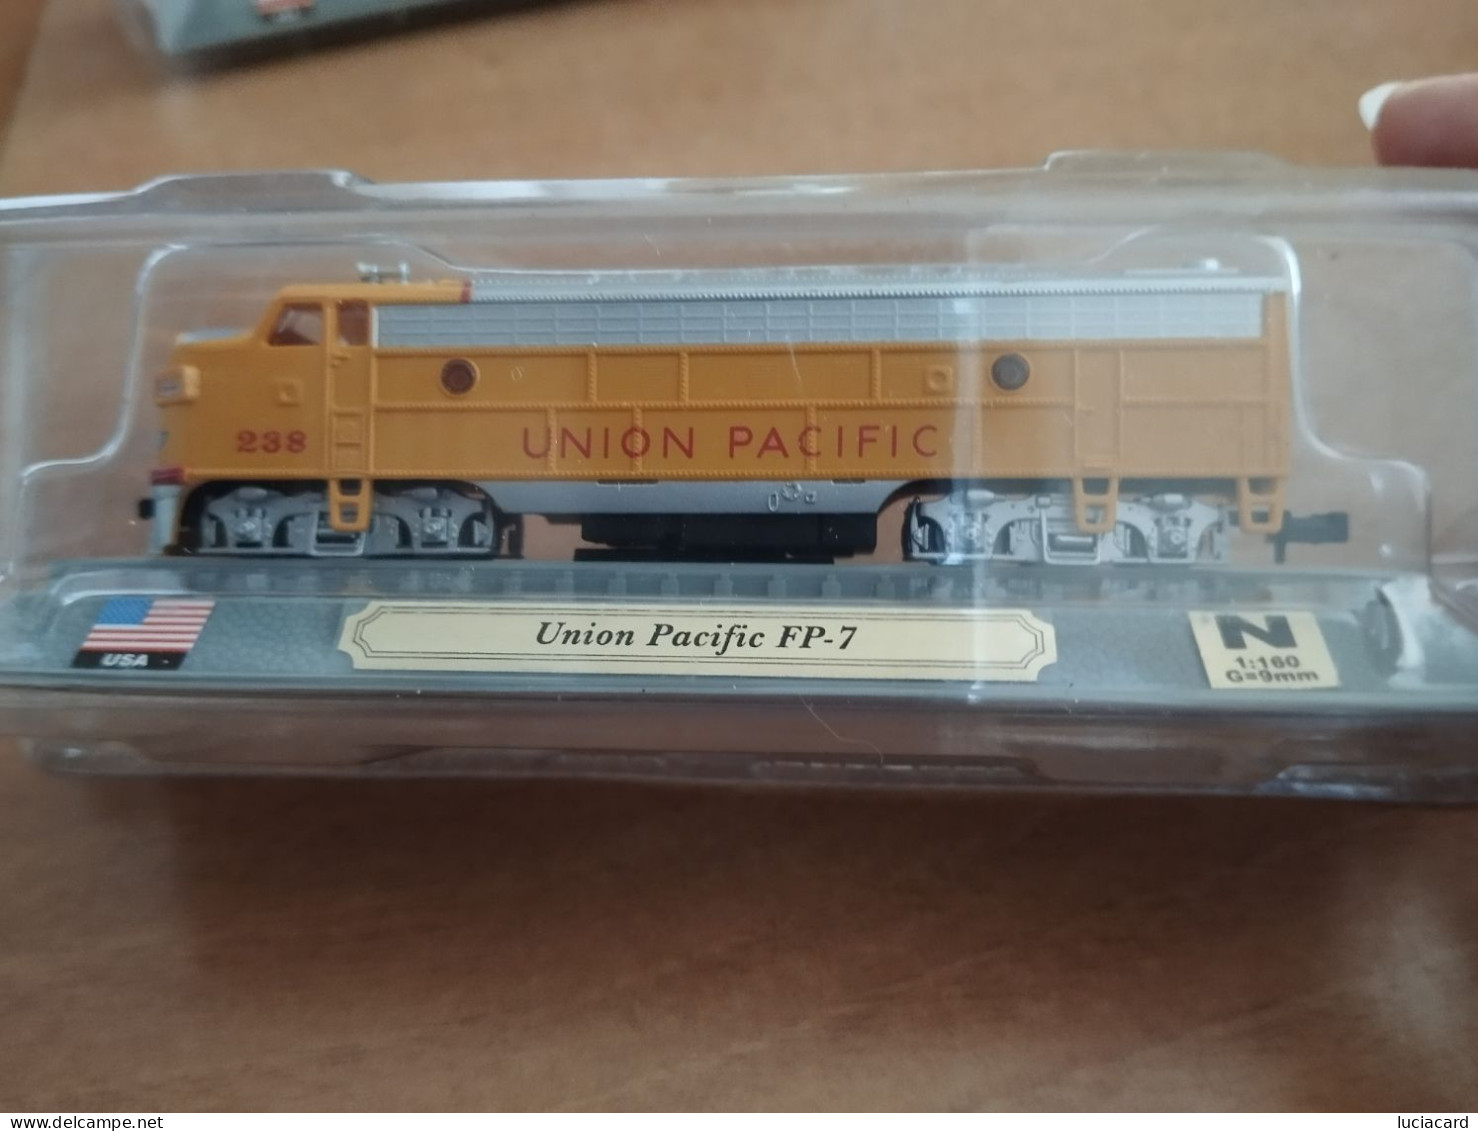 MODELLINO LOCOMOTIVA TRENO U.S.A. UNION PACIFIC FP-7  DEL PRADO Scala 1:160 - Locomotive